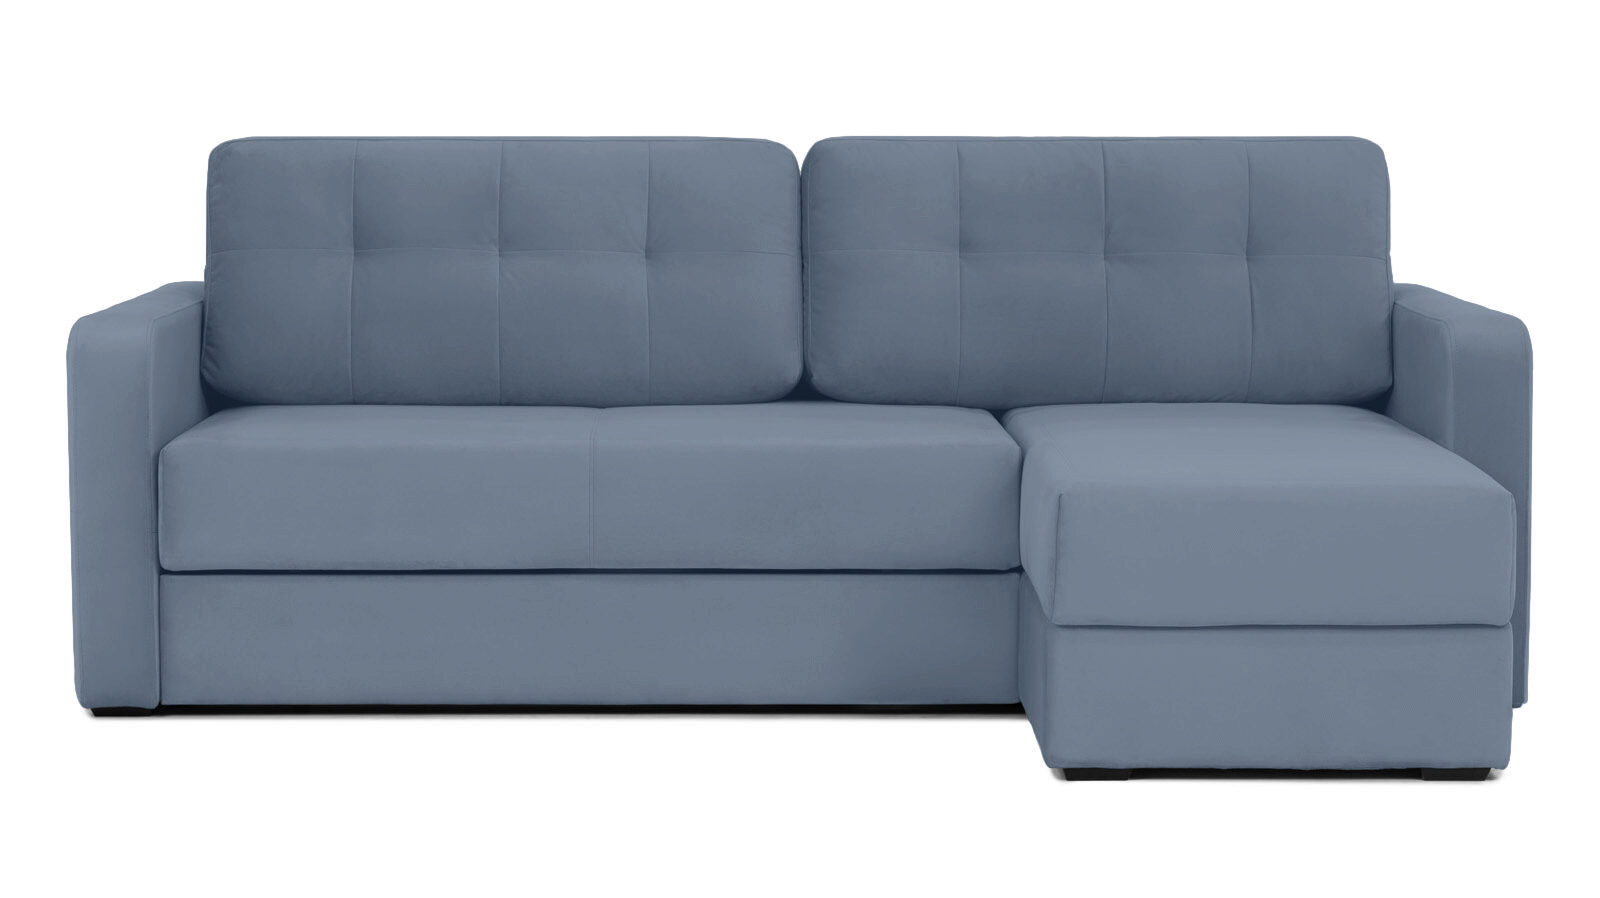 Угловой диван Loko Pro с широкими подлокотниками, с матрасом комбинированной жесткости